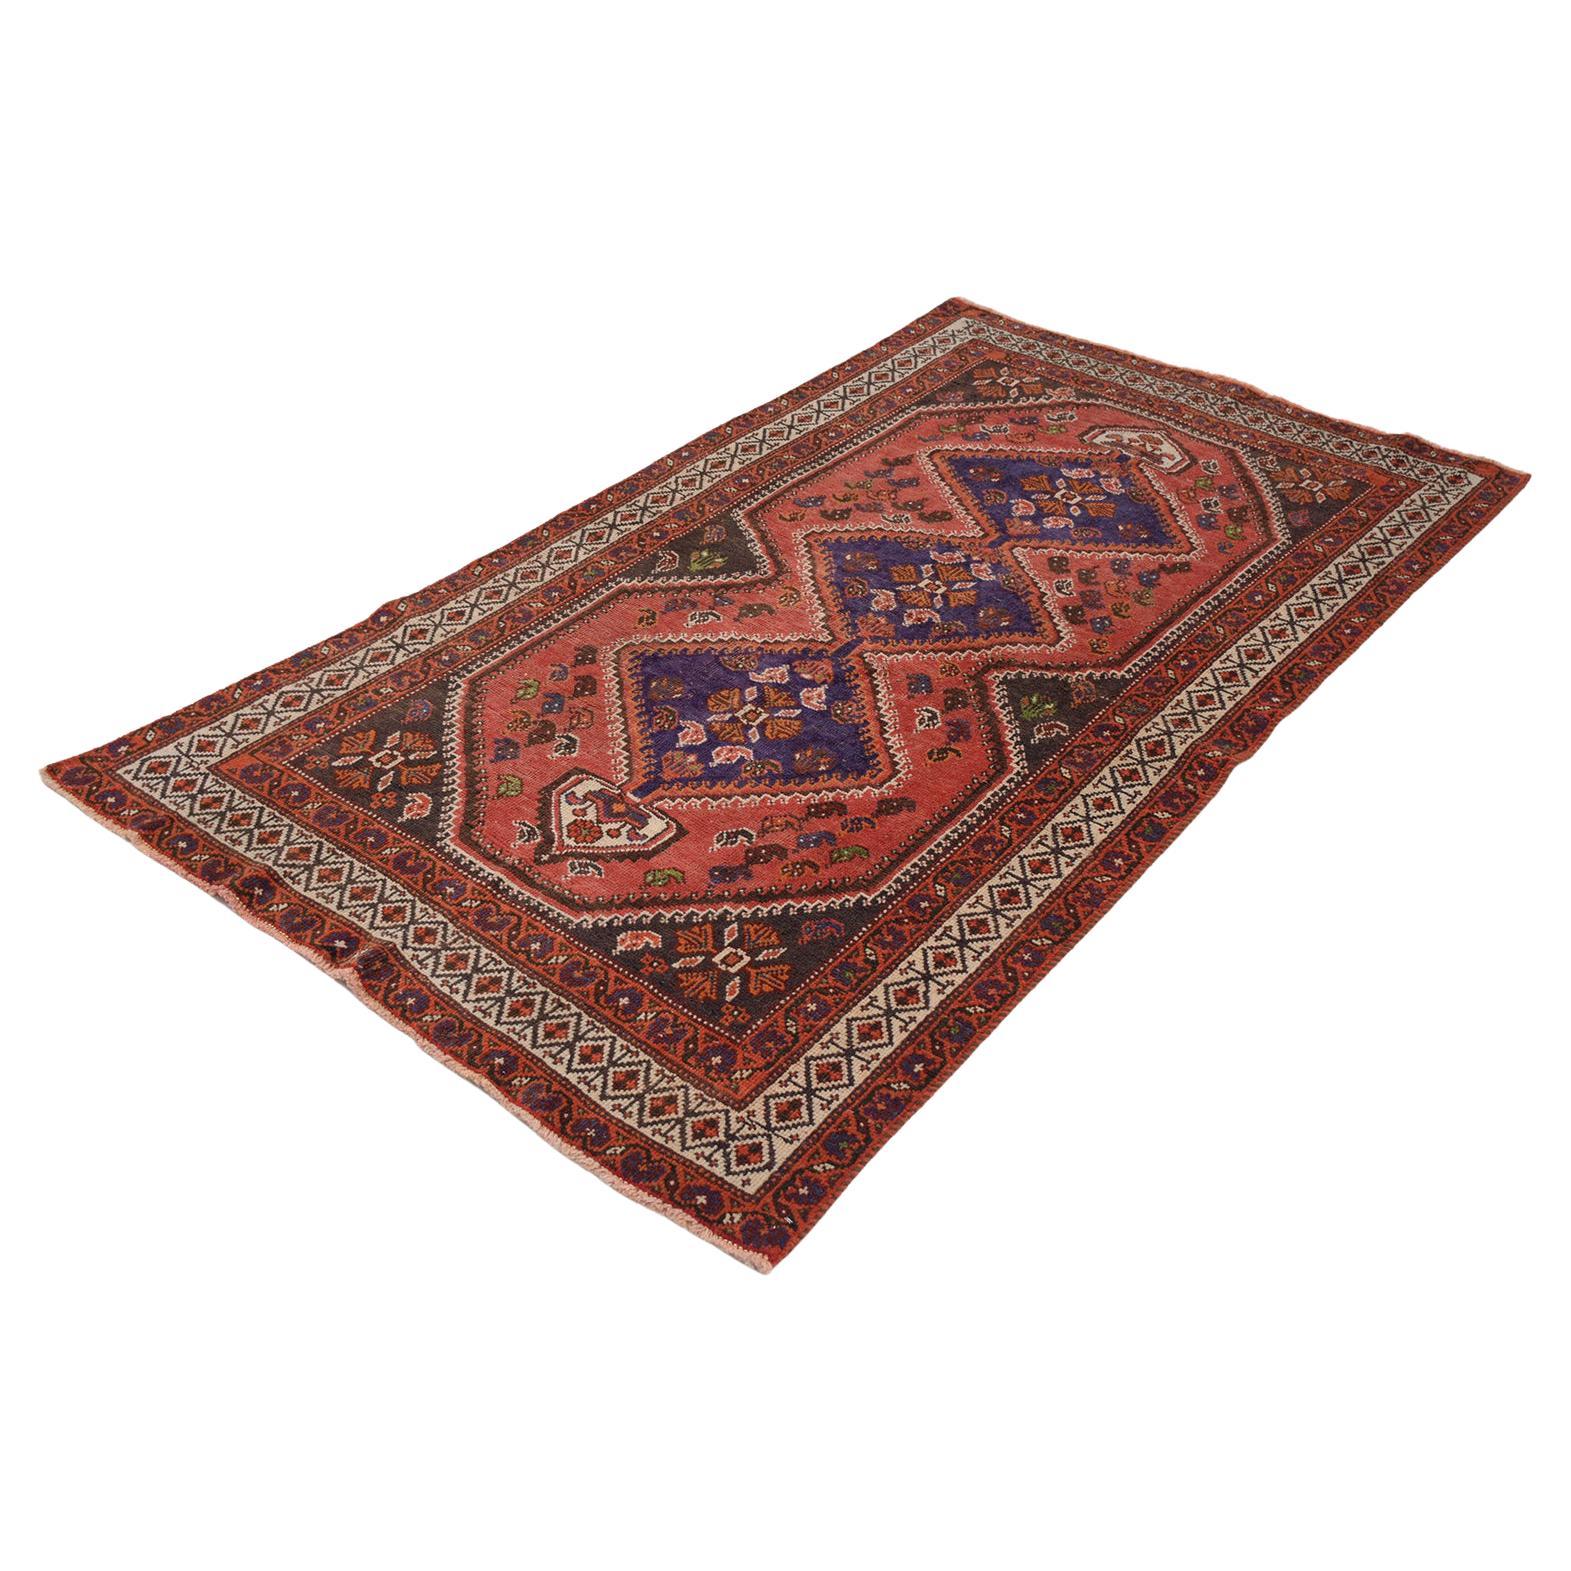 Vintage Red Textile Carpet Rug For Sale